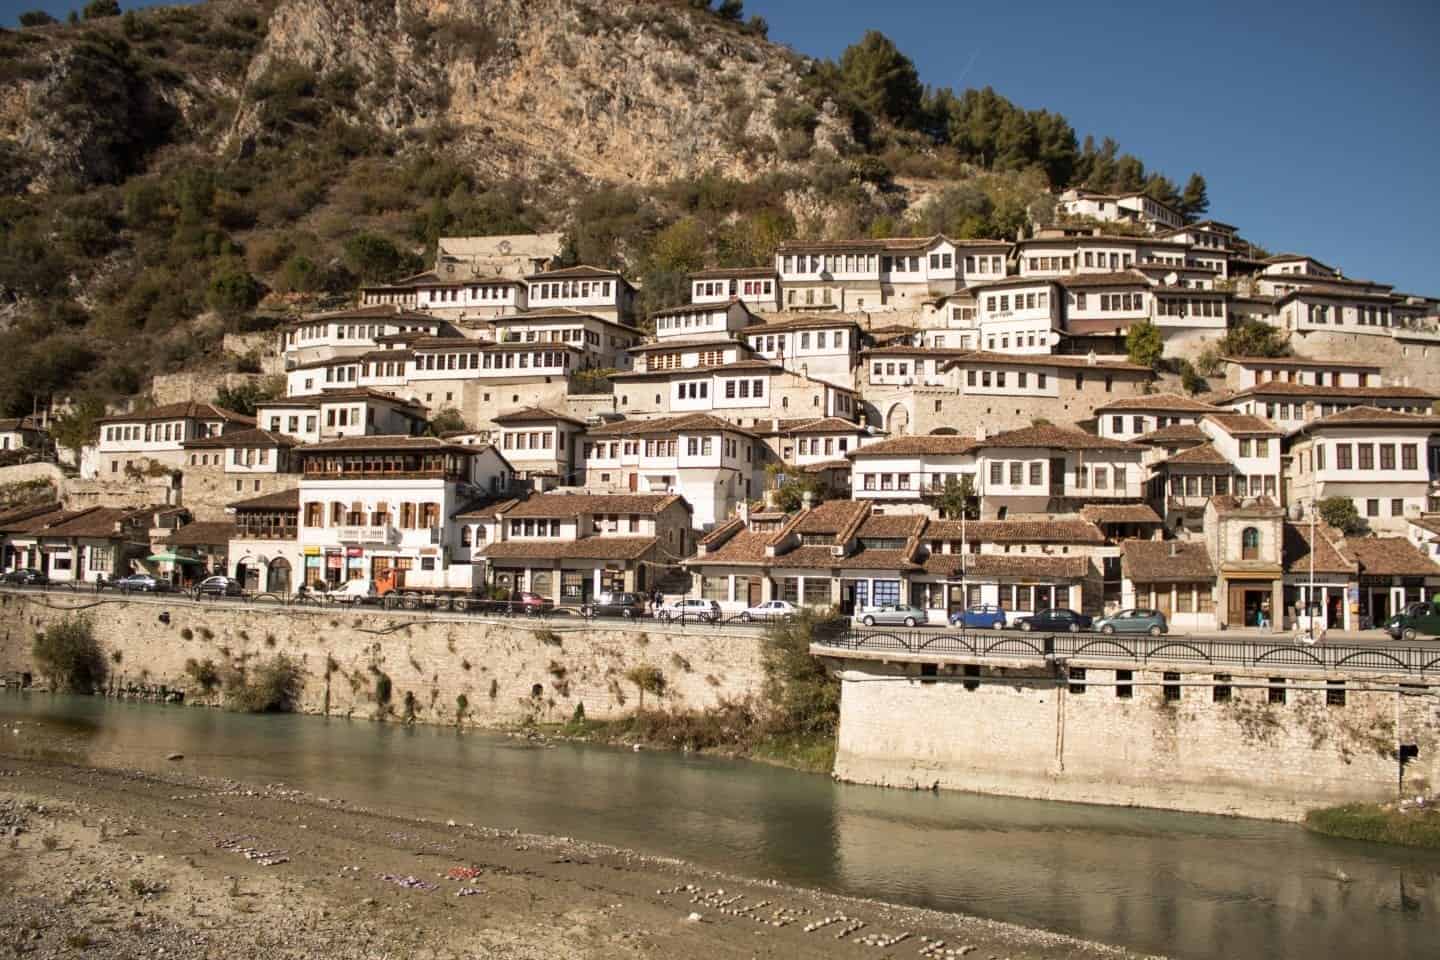 Qué hacer en Berat, edificios blancos con tejados de tejas al sol en una colina junto a un río